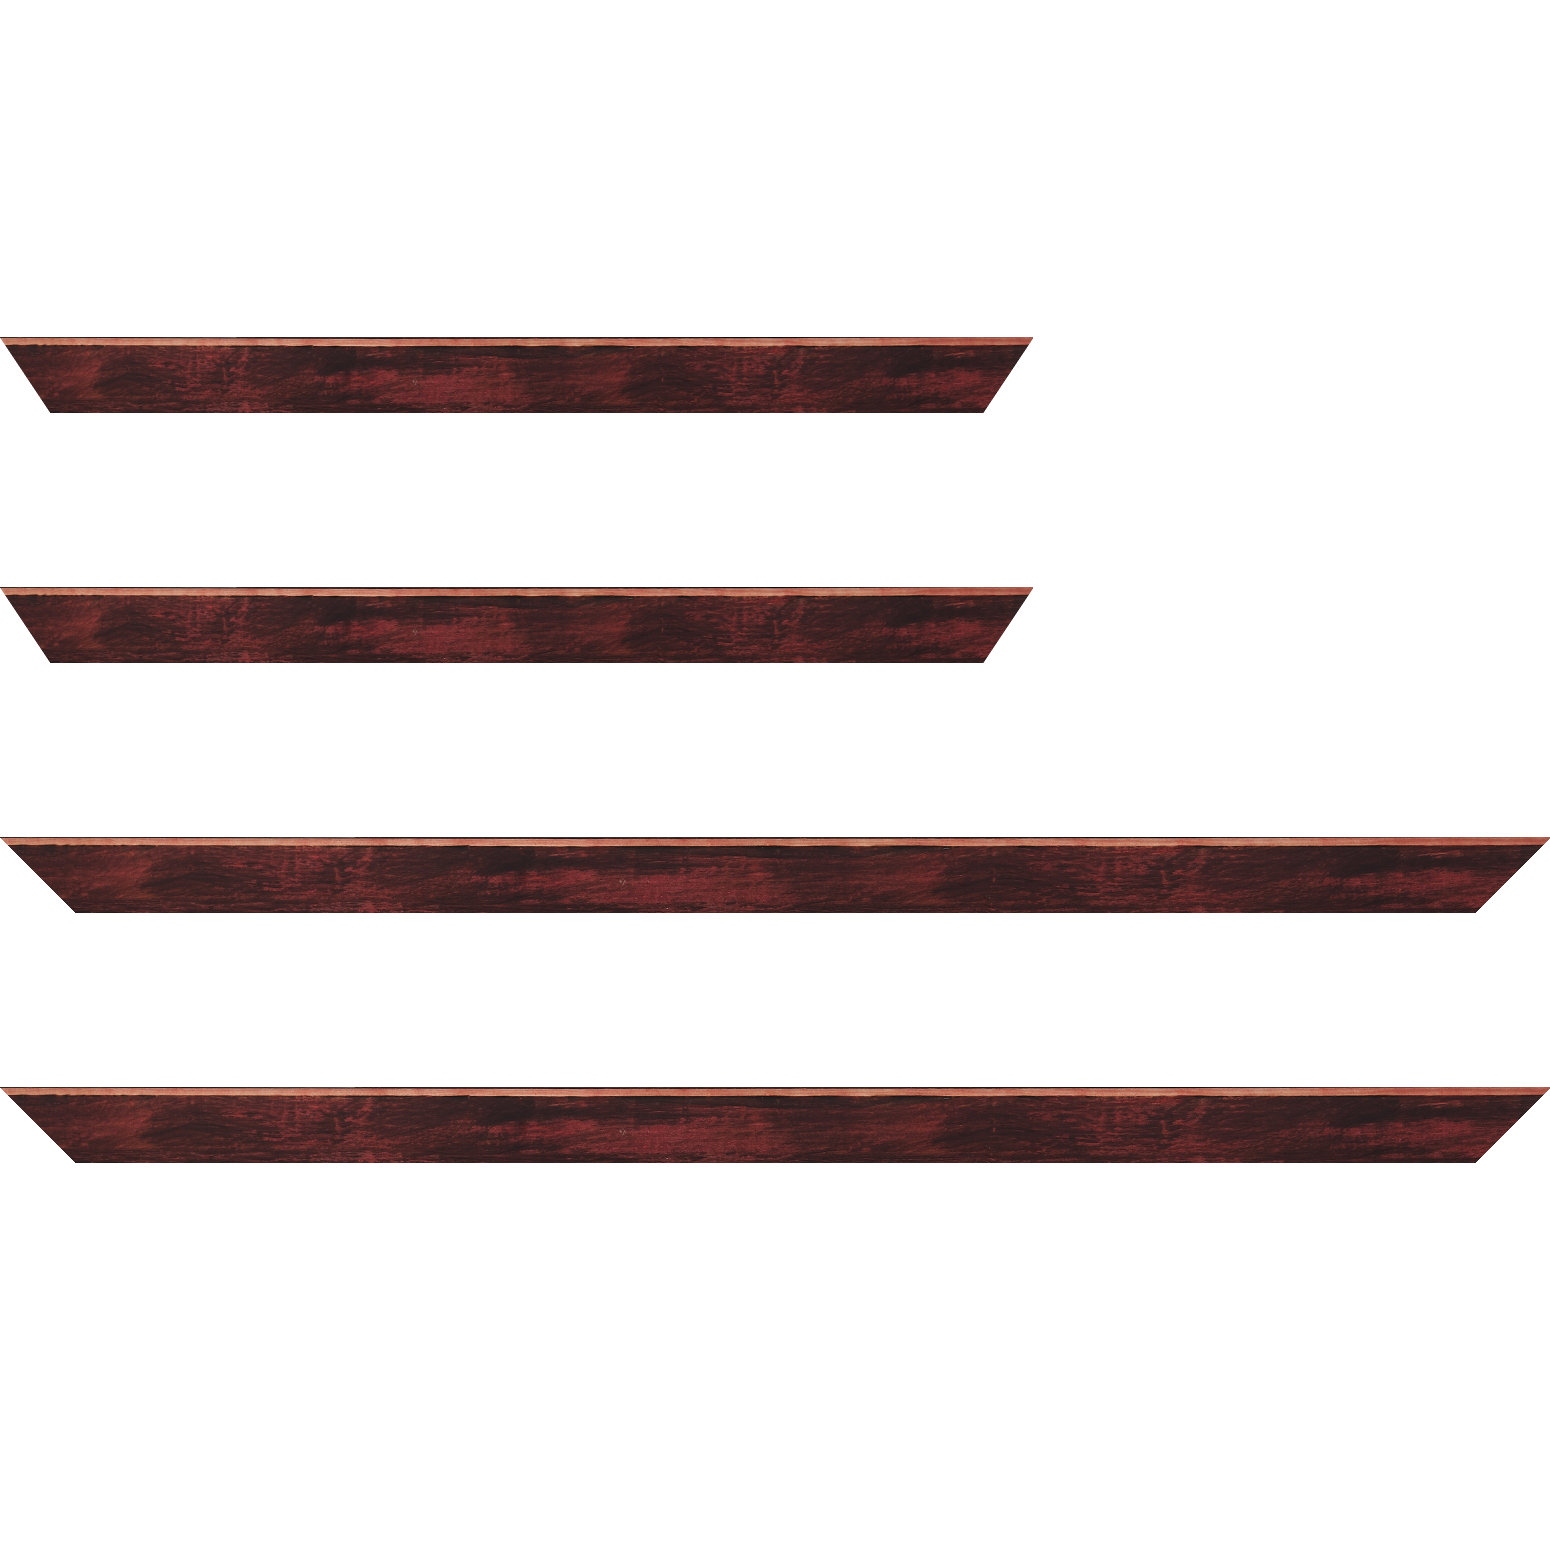 Baguette bois profil arrondi en pente plongeant largeur 2.4cm couleur bordeaux effet ressuyé, angle du cadre extérieur filet naturel - 34x40